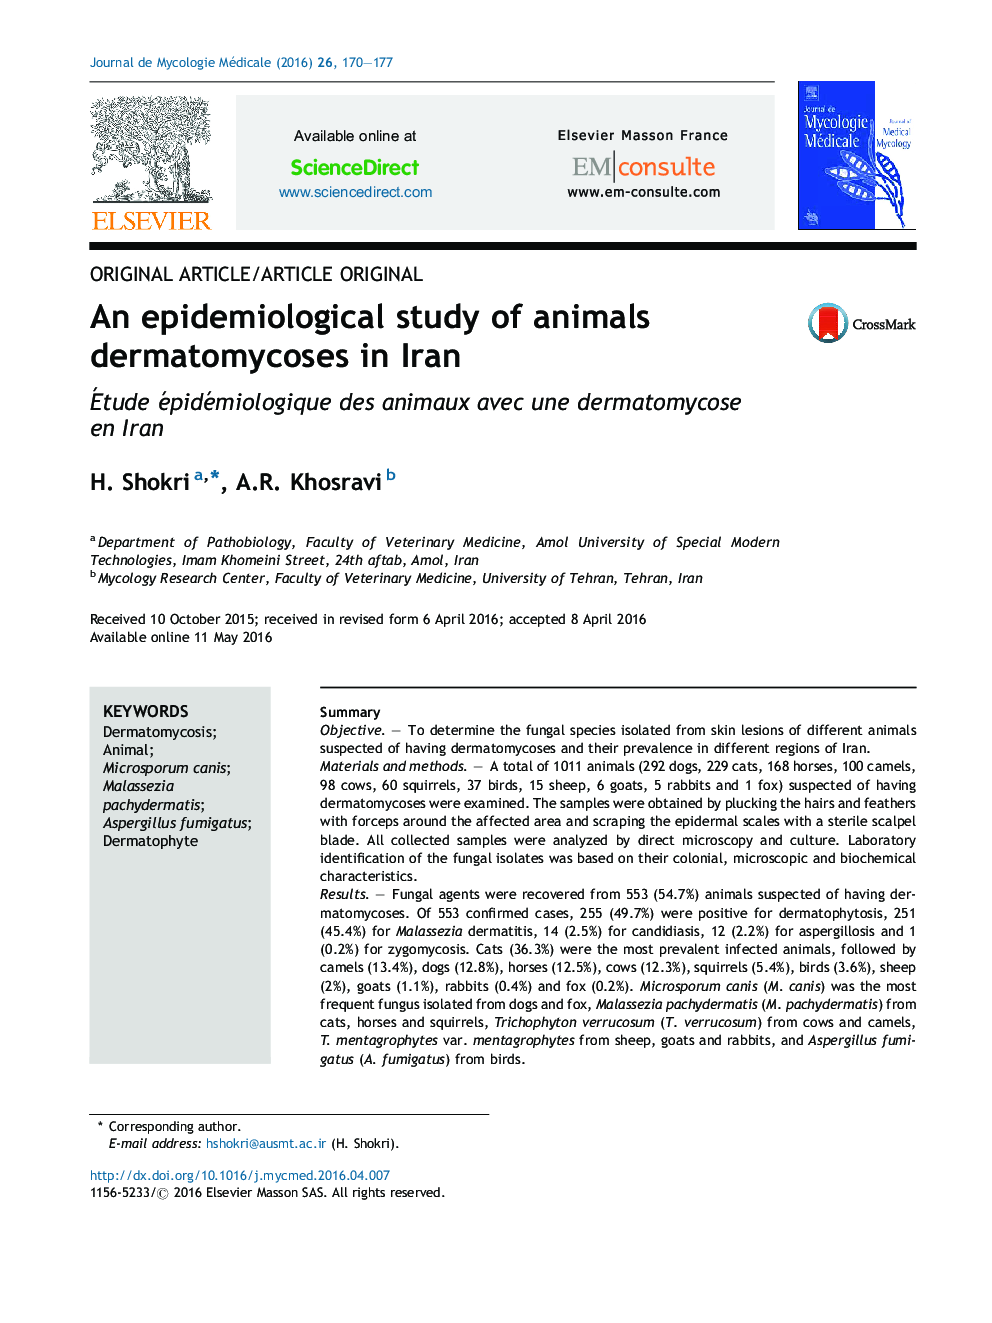 یک مطالعه اپیدمیولوژیک درماتومیکوزهای حیوانات در ایران 